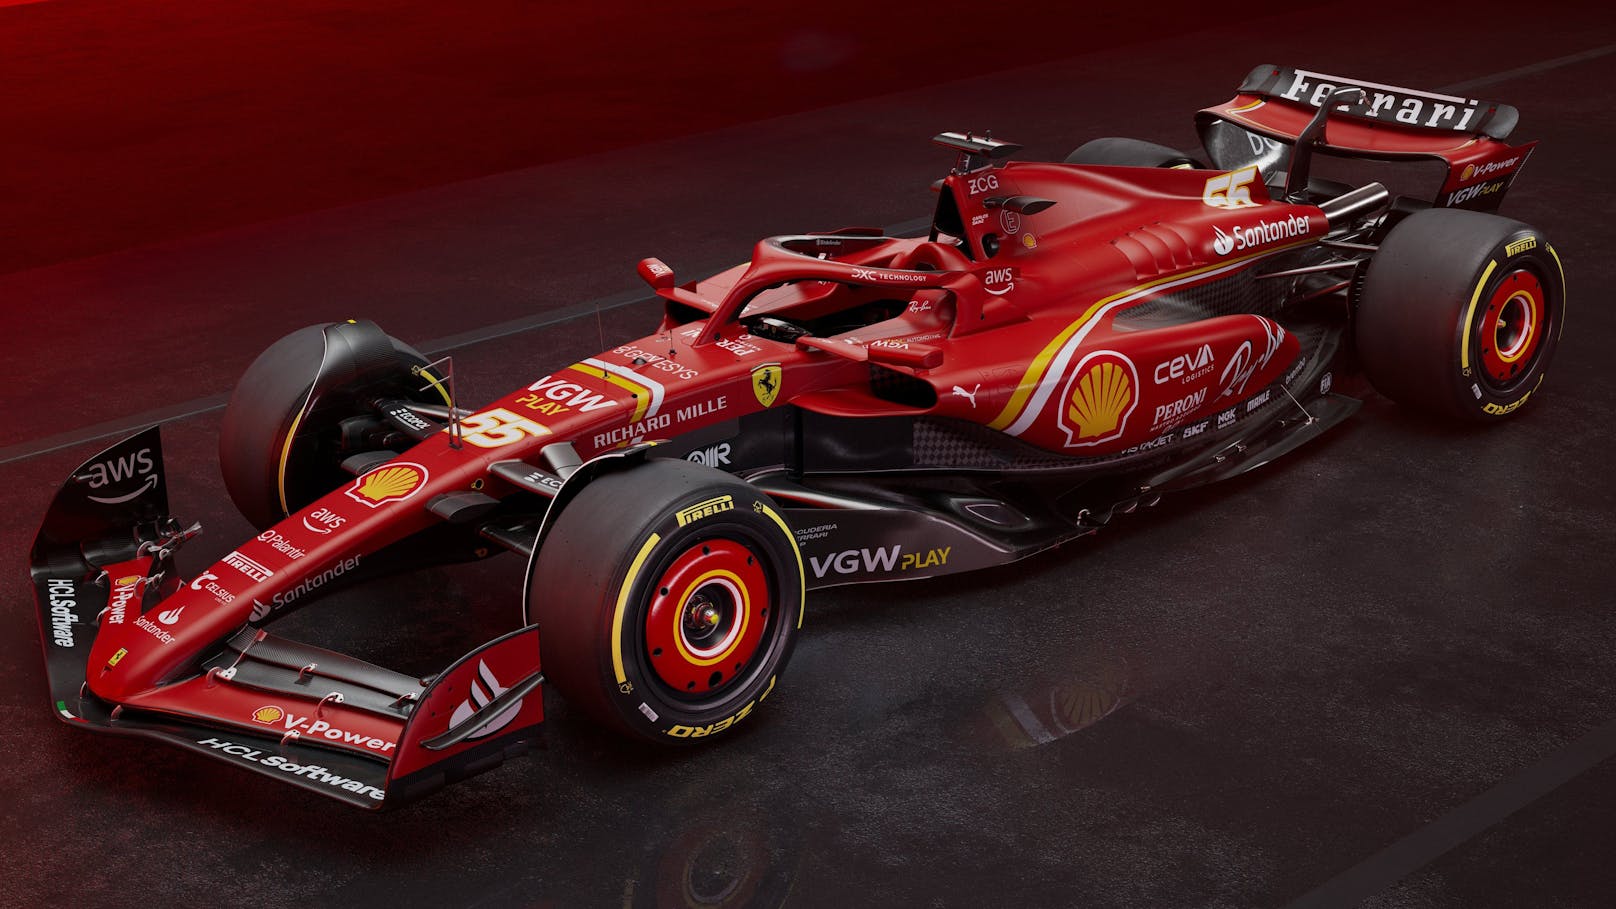 So sieht der letzte Ferrari vor der Hamilton-Ära aus